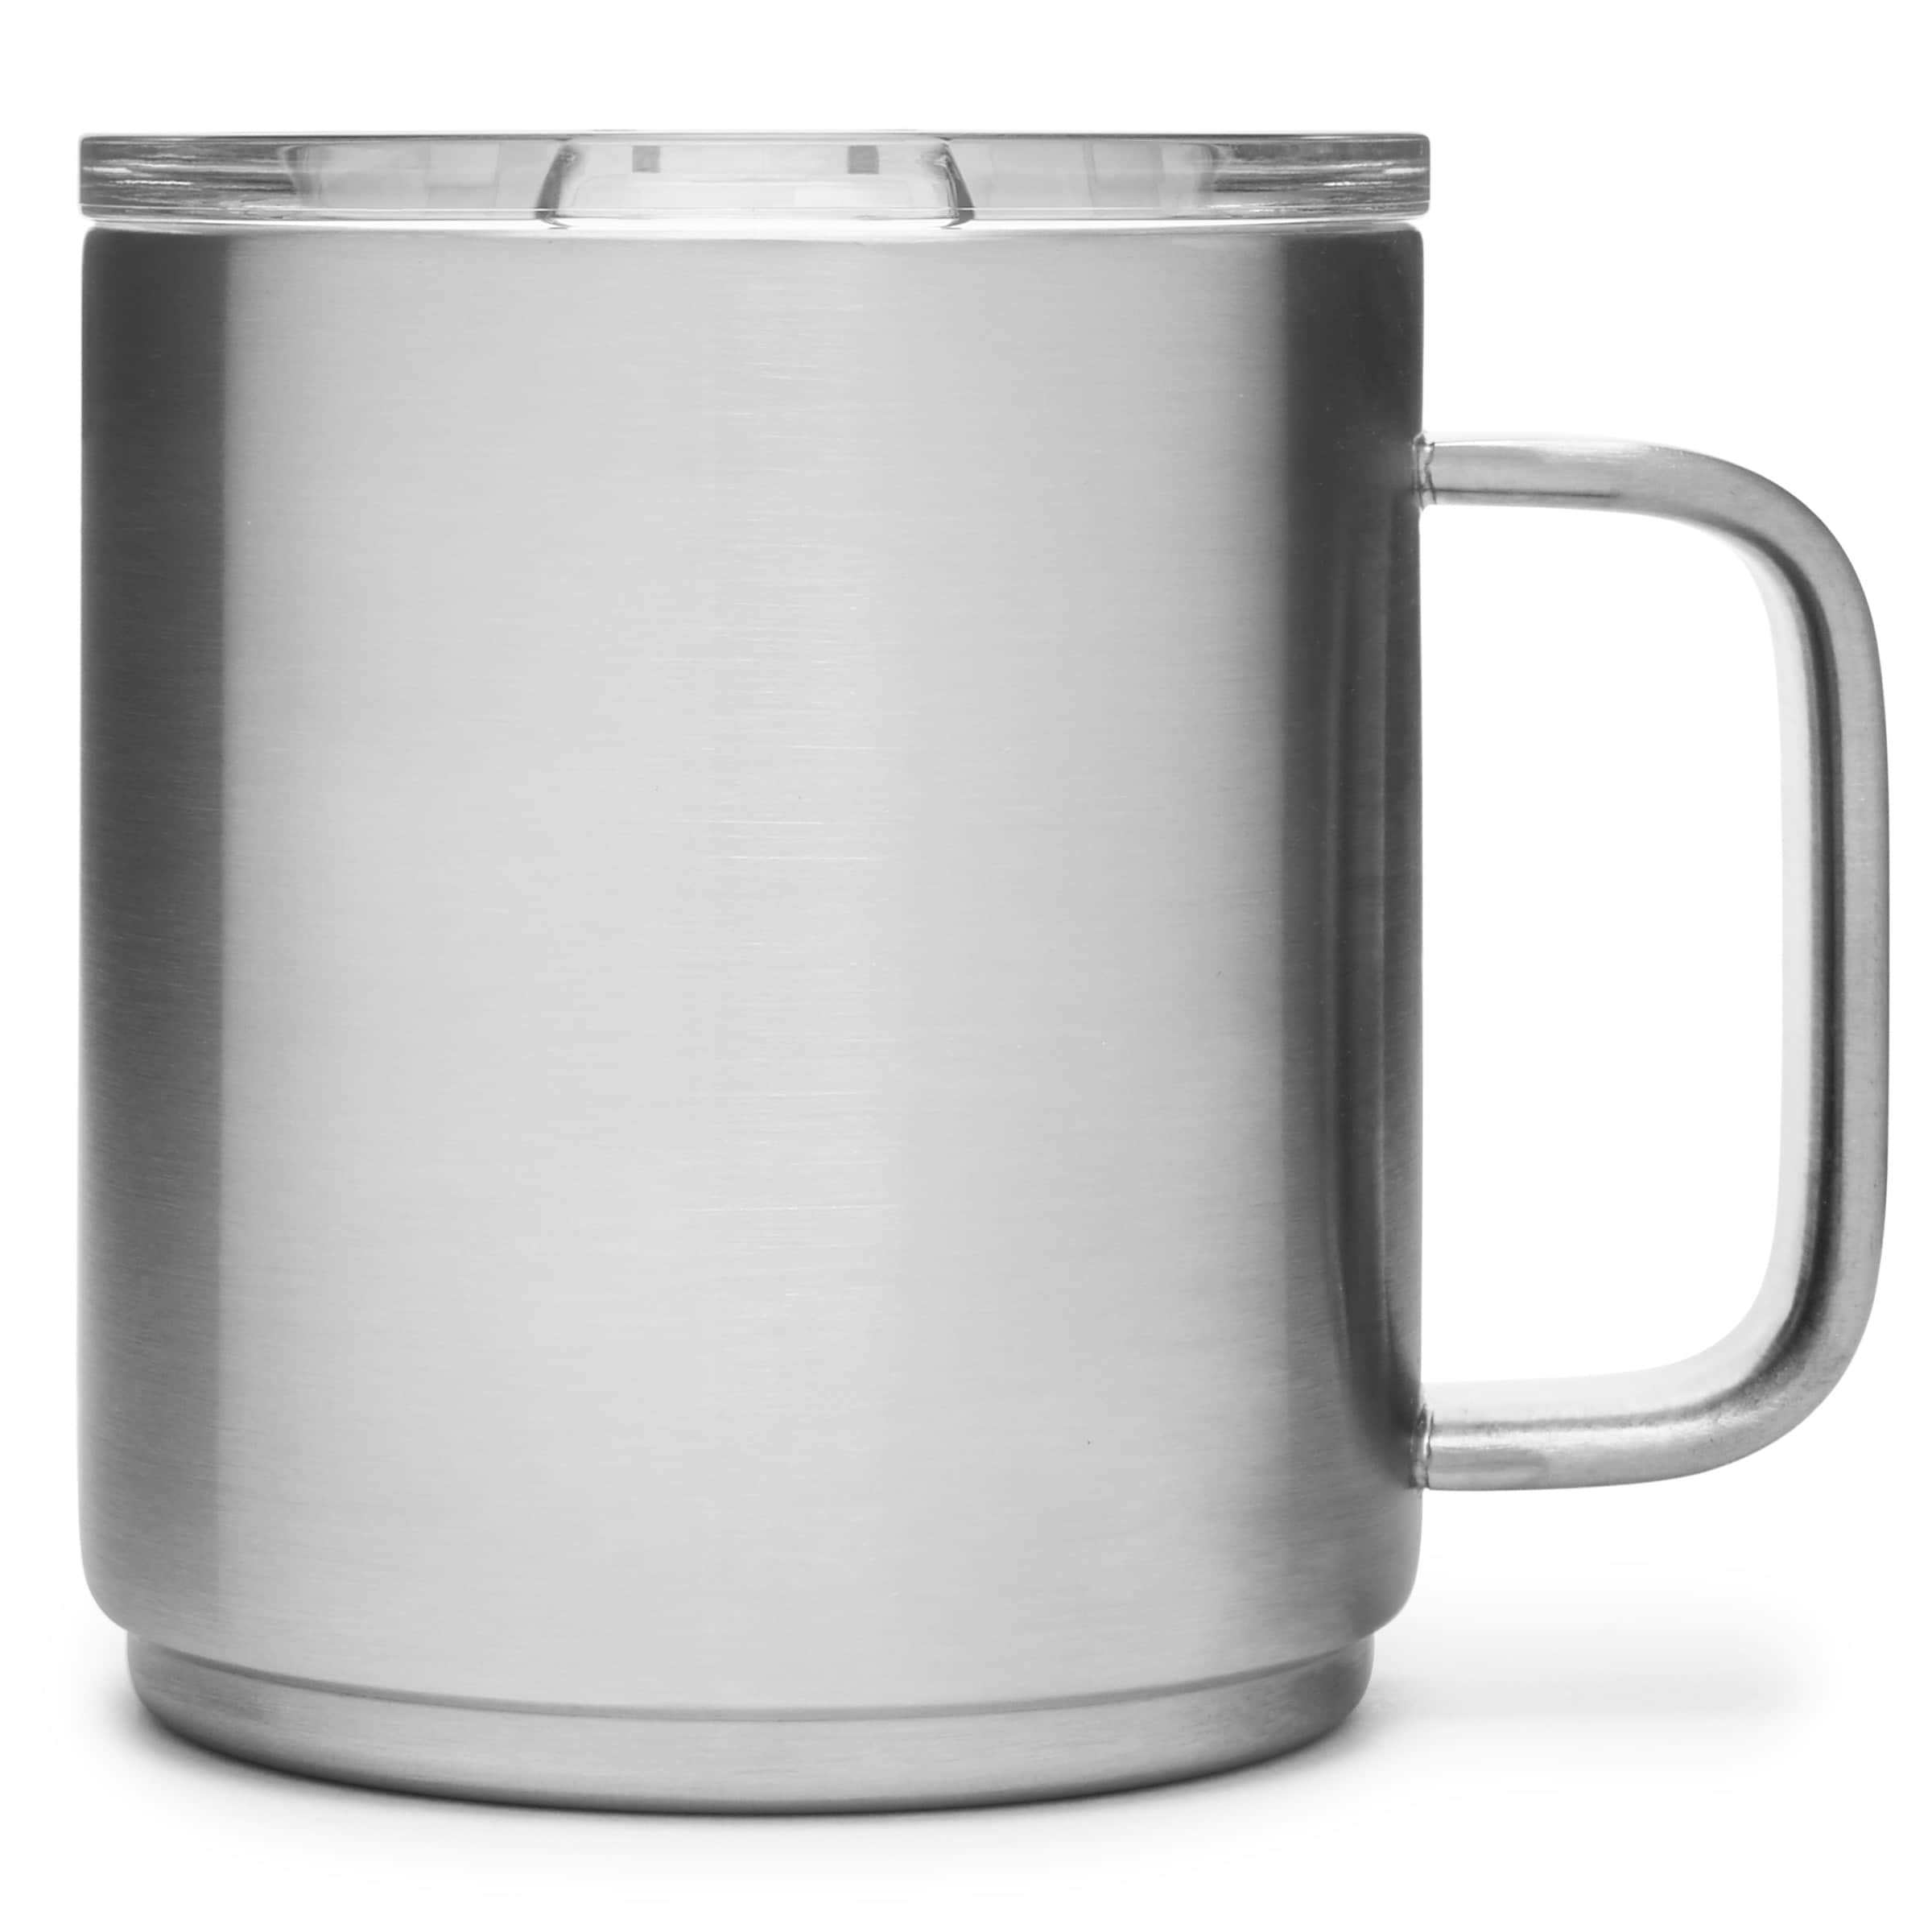 Yeti Rambler 10oz Stackable Mugs - Set of 4